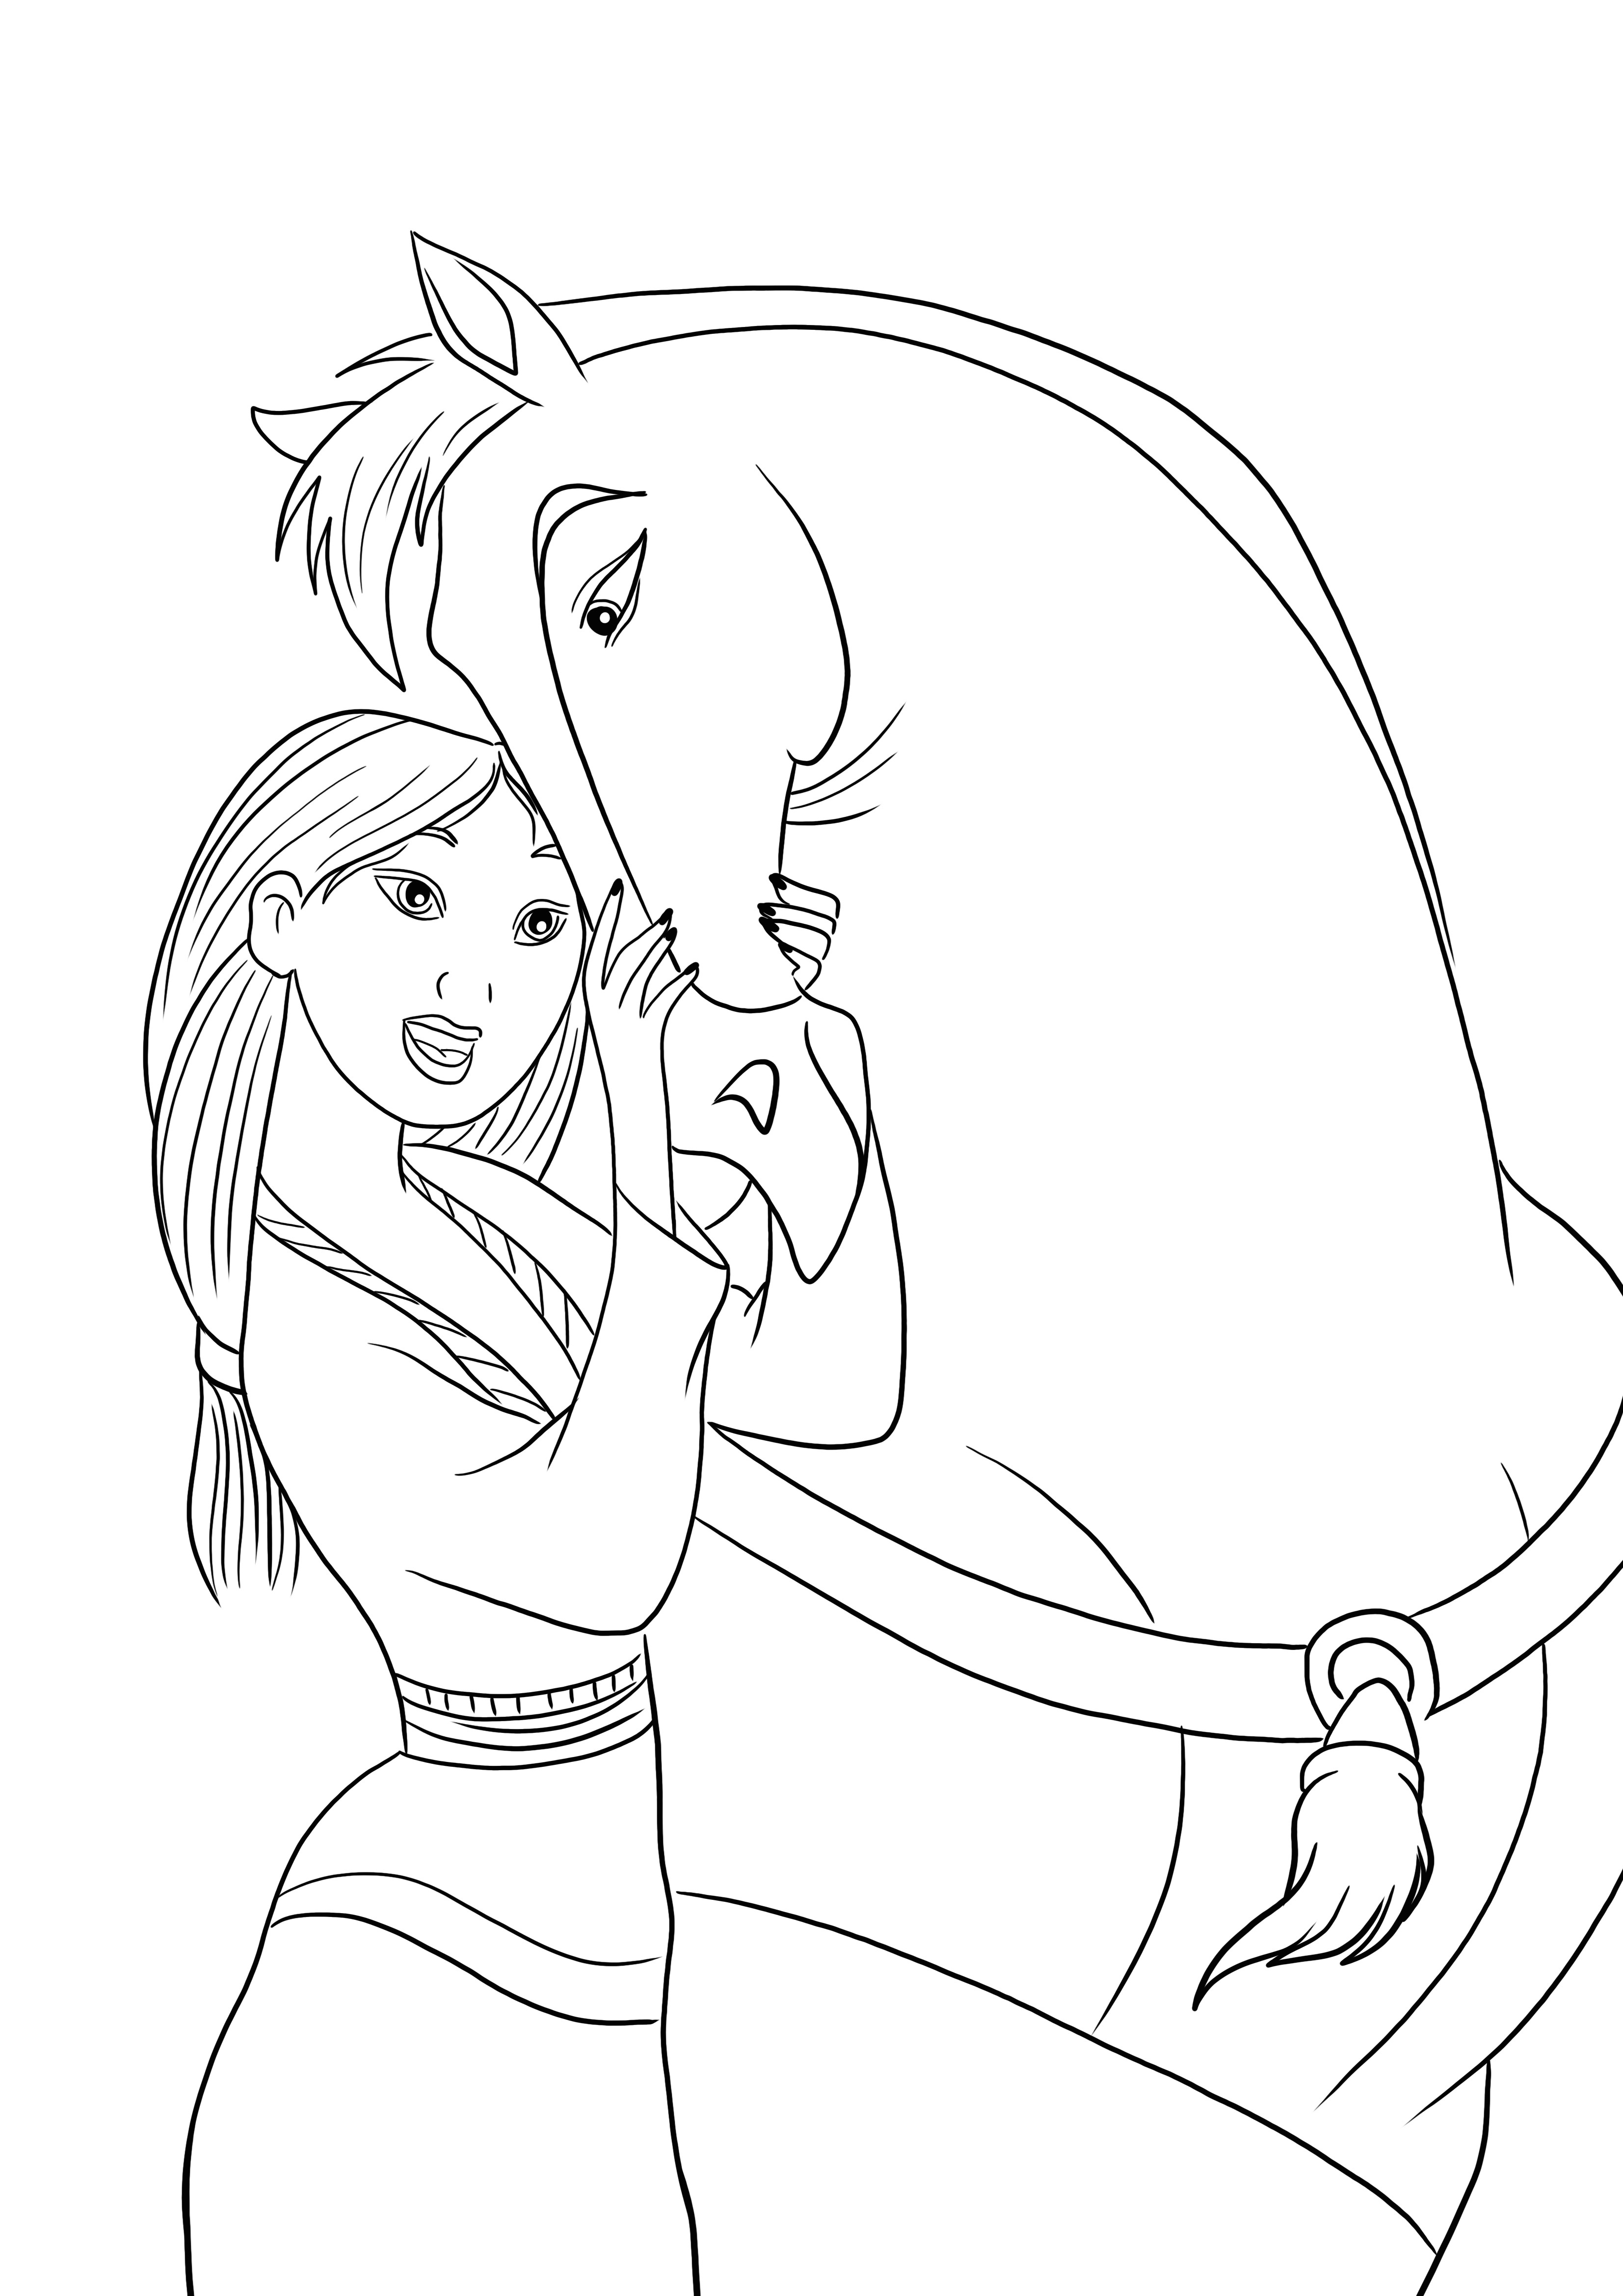 Mulan e o cavalo da família Khan prontos para serem impressos e coloridos gratuitamente